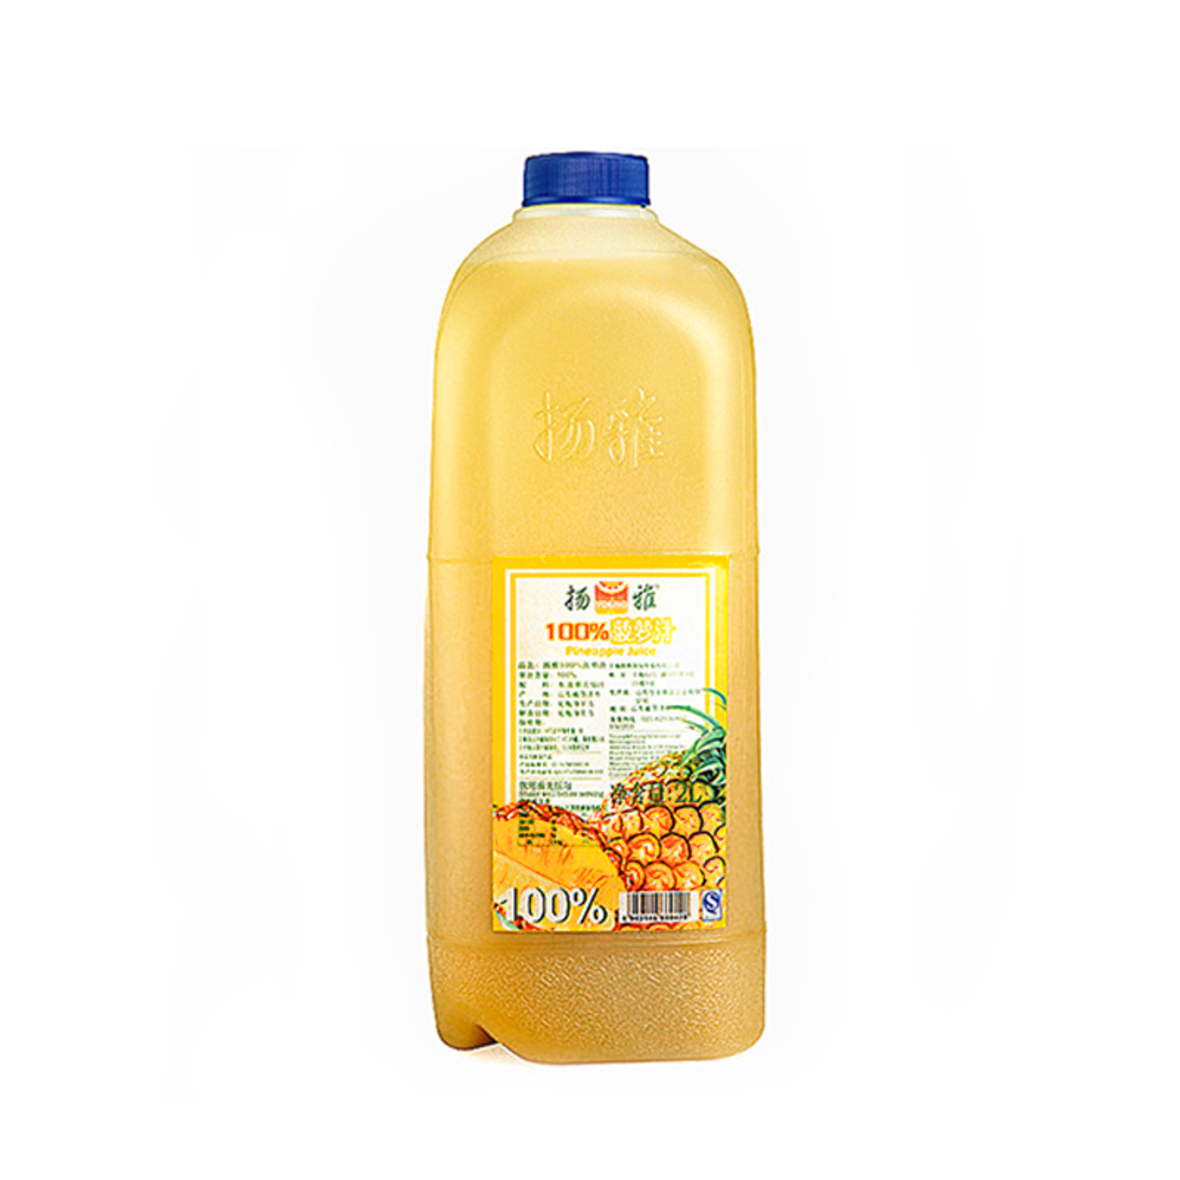 扬雅果汁FC100%菠萝汁